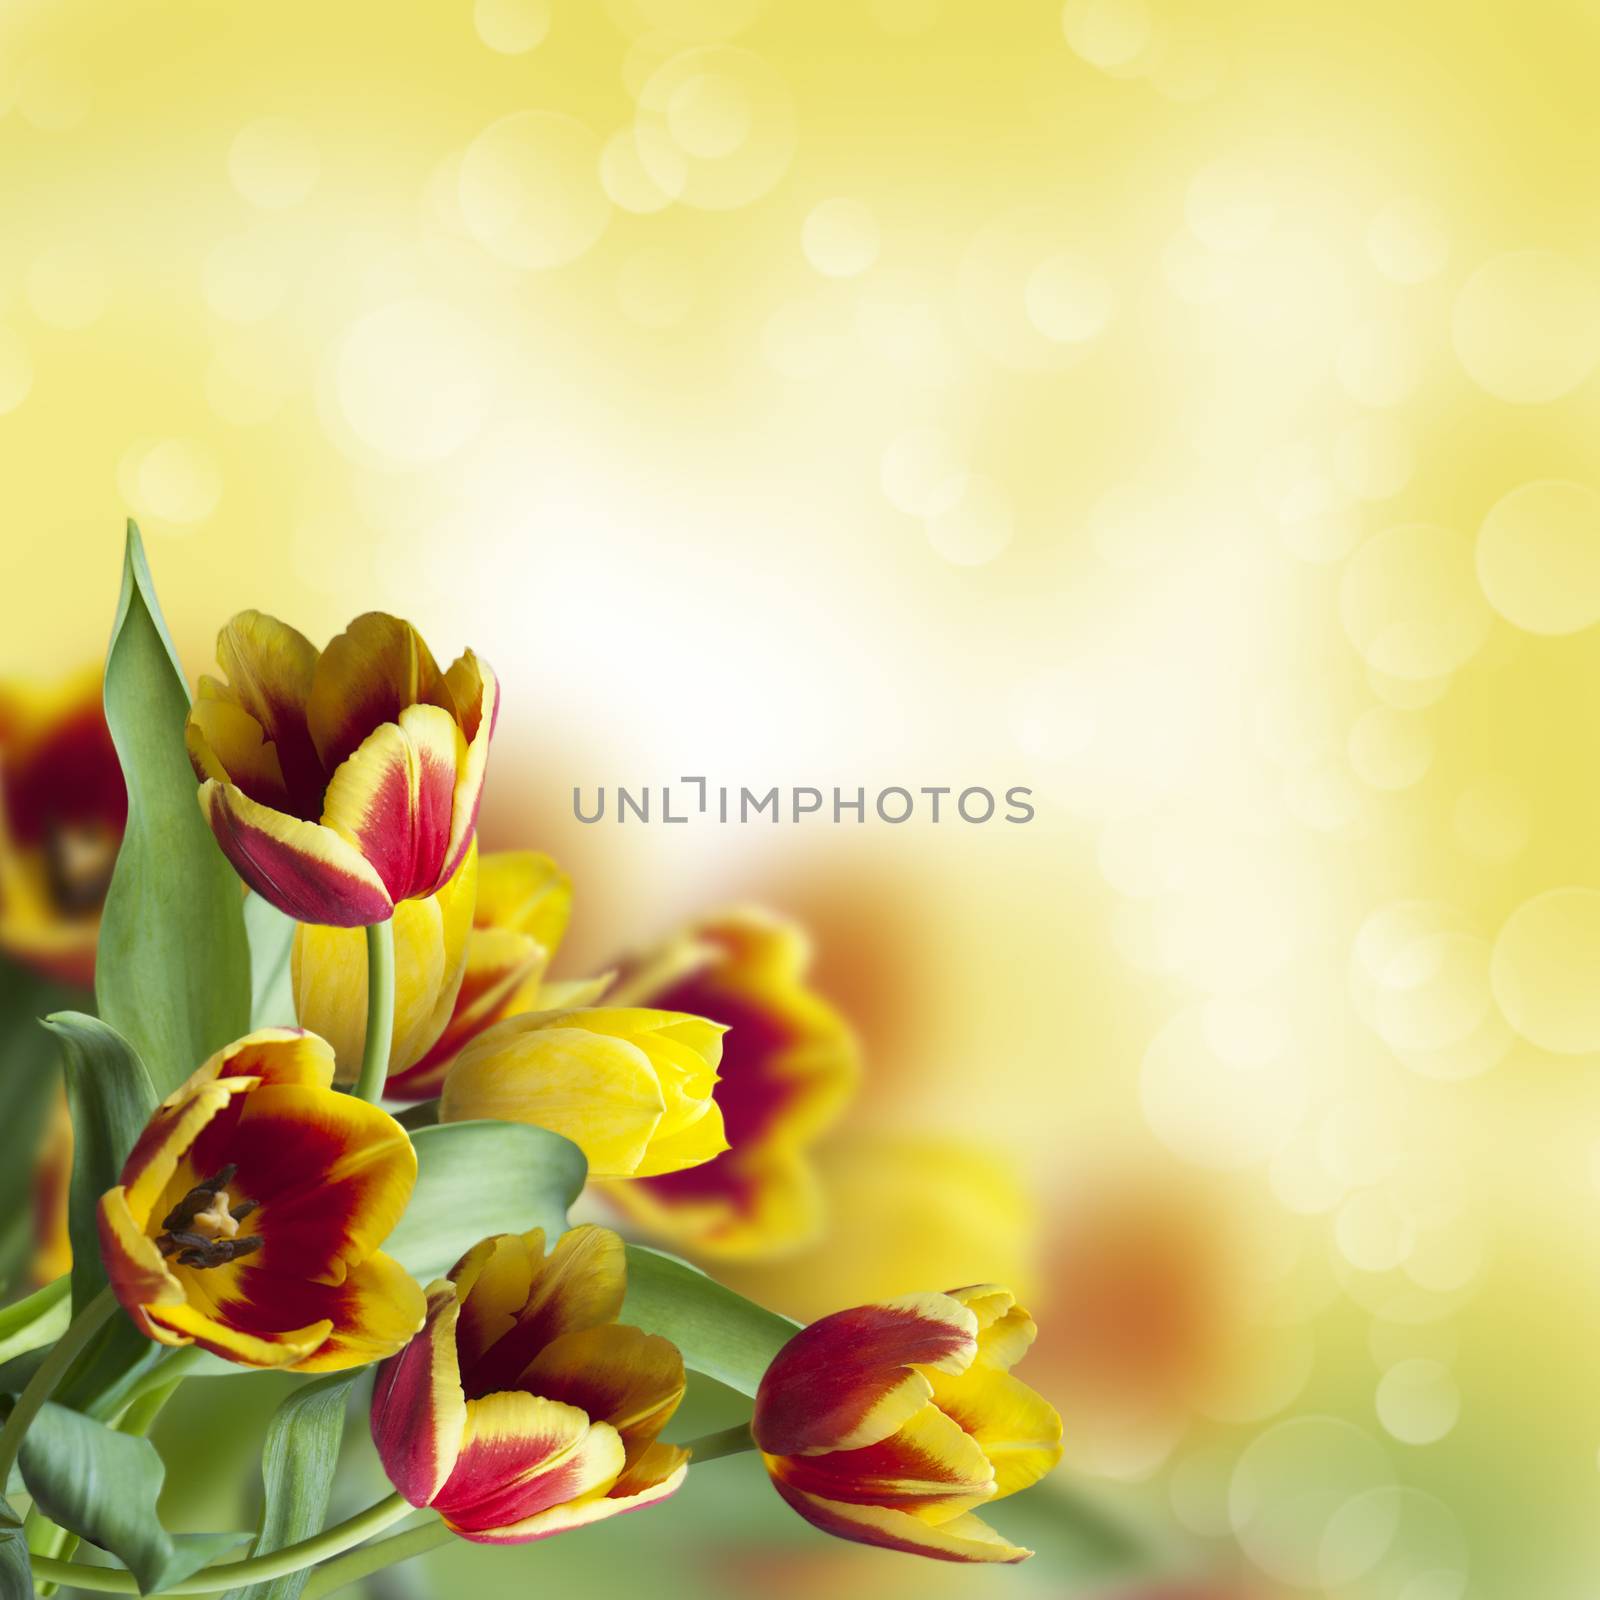 Colorful tulips on illuminated background by raduga21